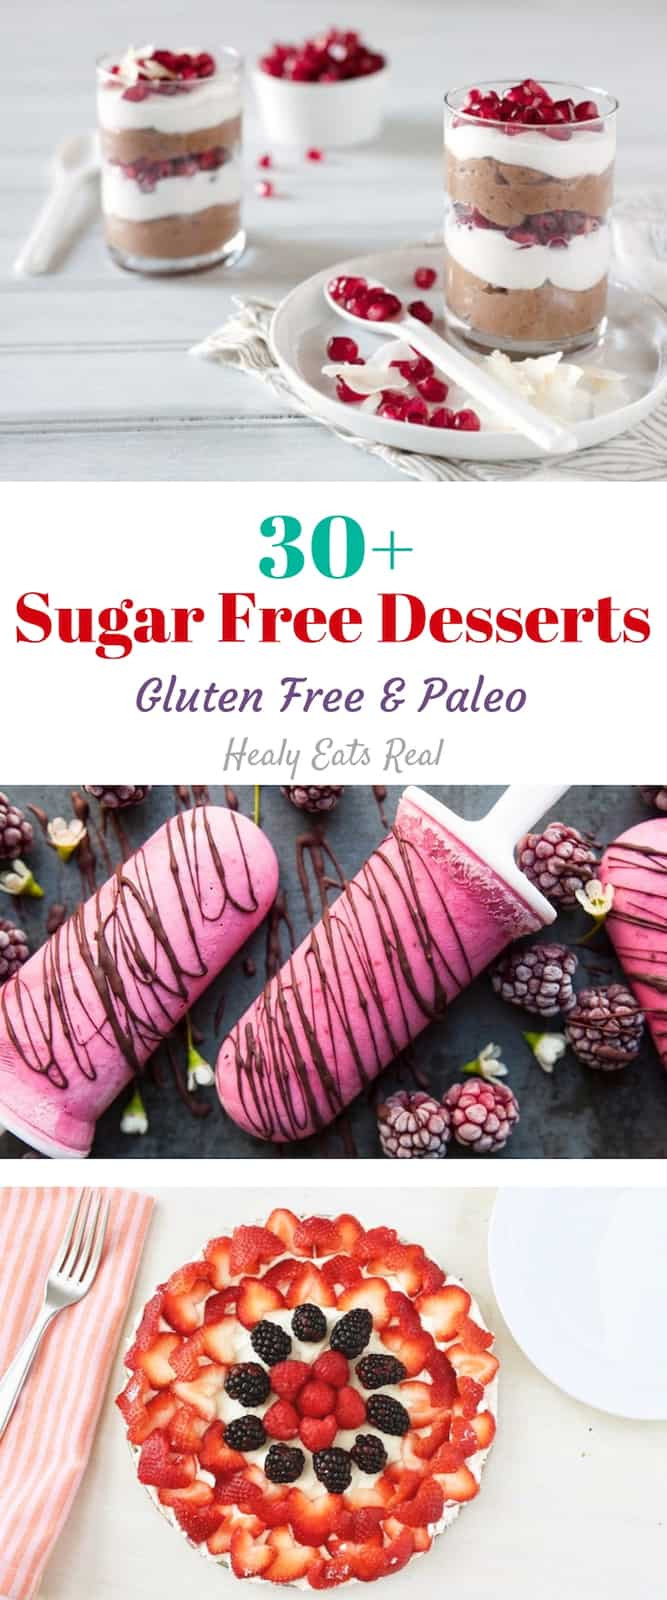 Sugar Free Gluten Free Dairy Free Desserts
 30 Tasty Sugar Free Desserts Gluten Free & Paleo